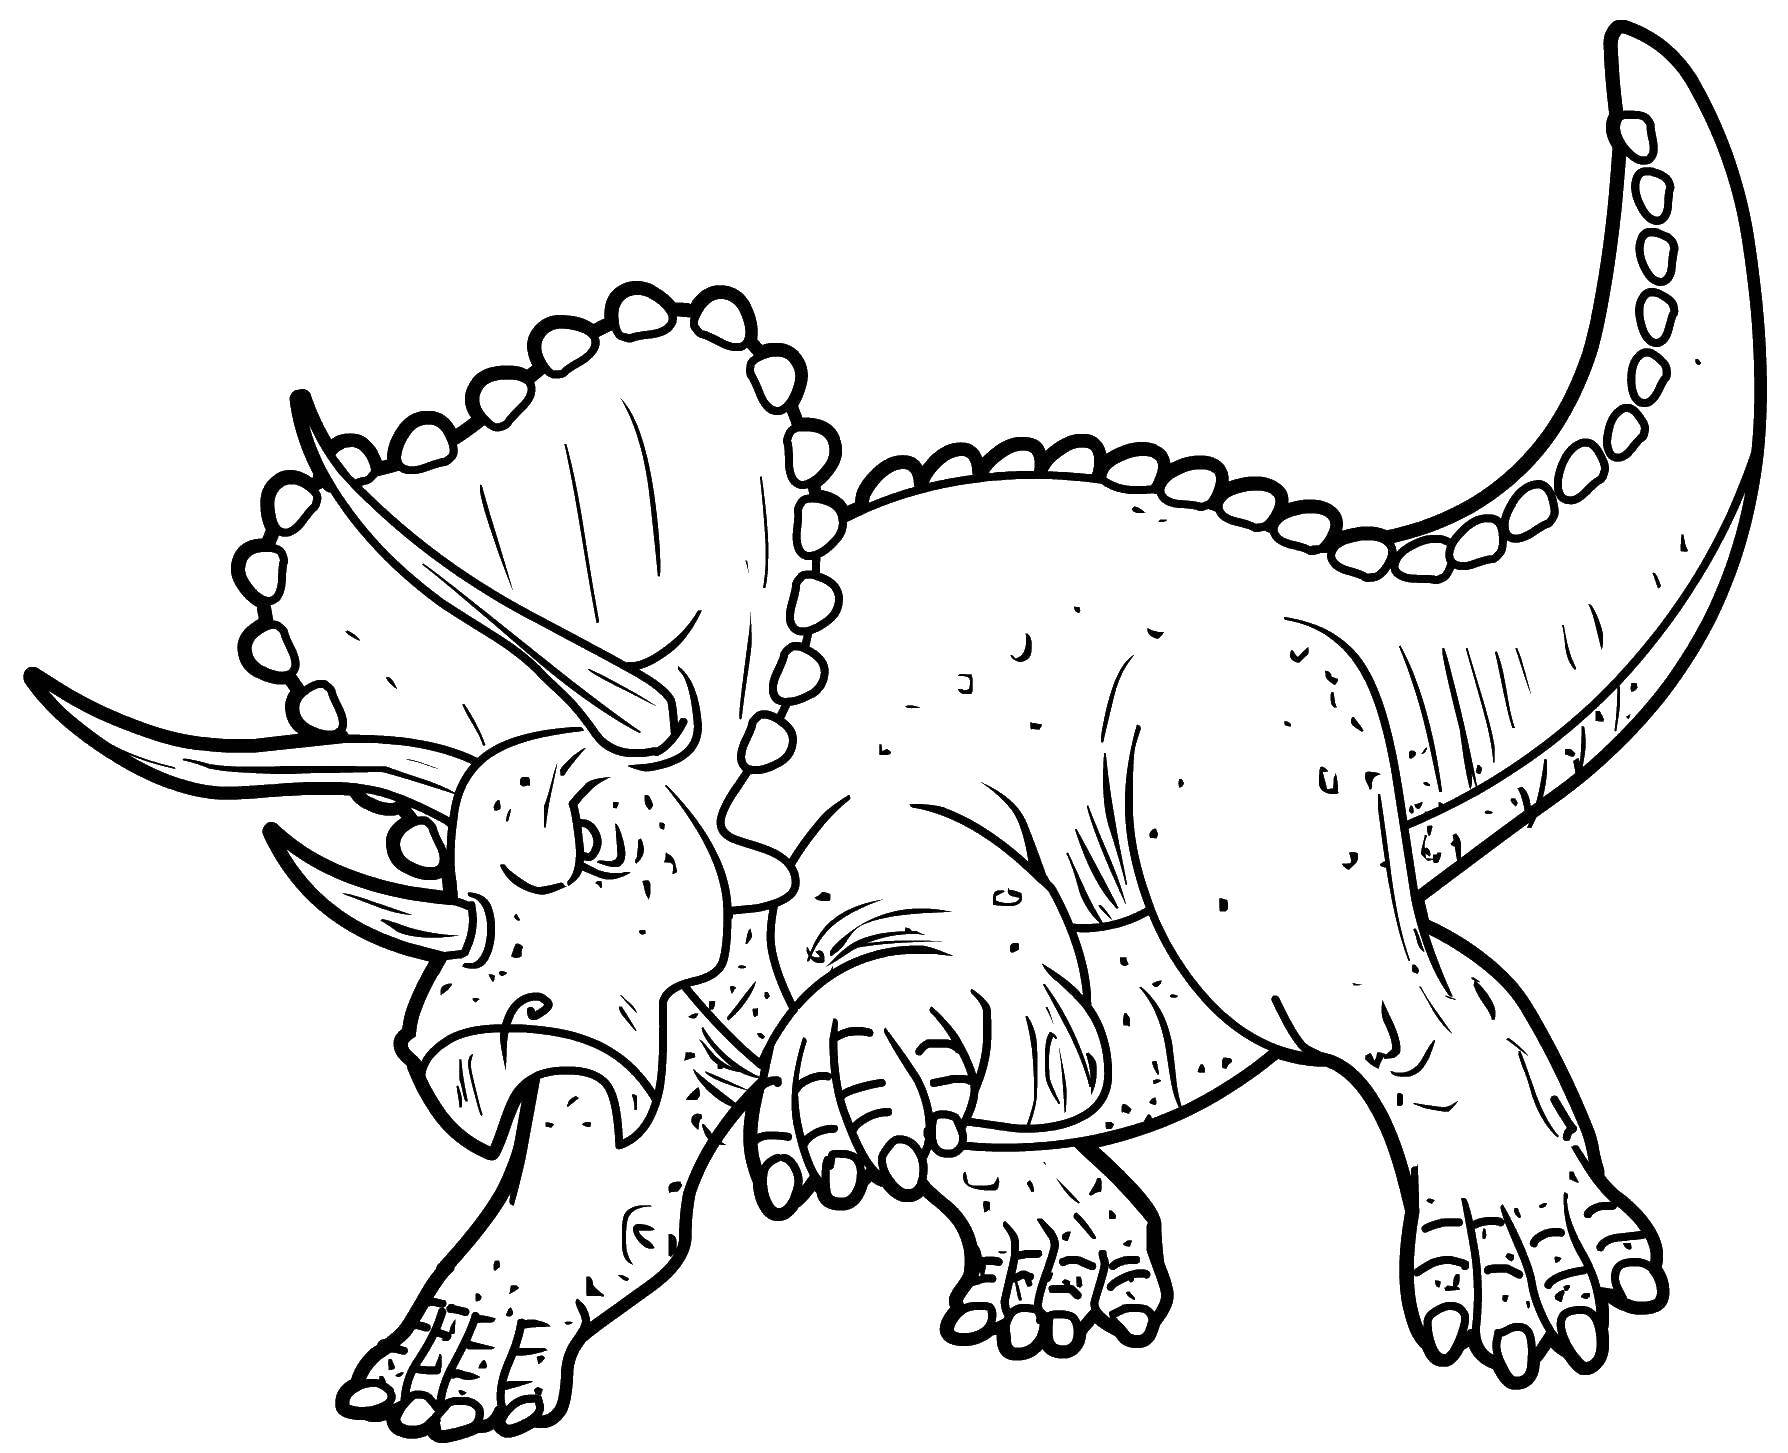 Динозавры раскраска а4. Трицератопс динозавр раскраска. Раскраска динозавры Спинозавр. Раскраска Анкилозавр и Трицератопс. Раскраска Трицератопс парк Юрского периода.